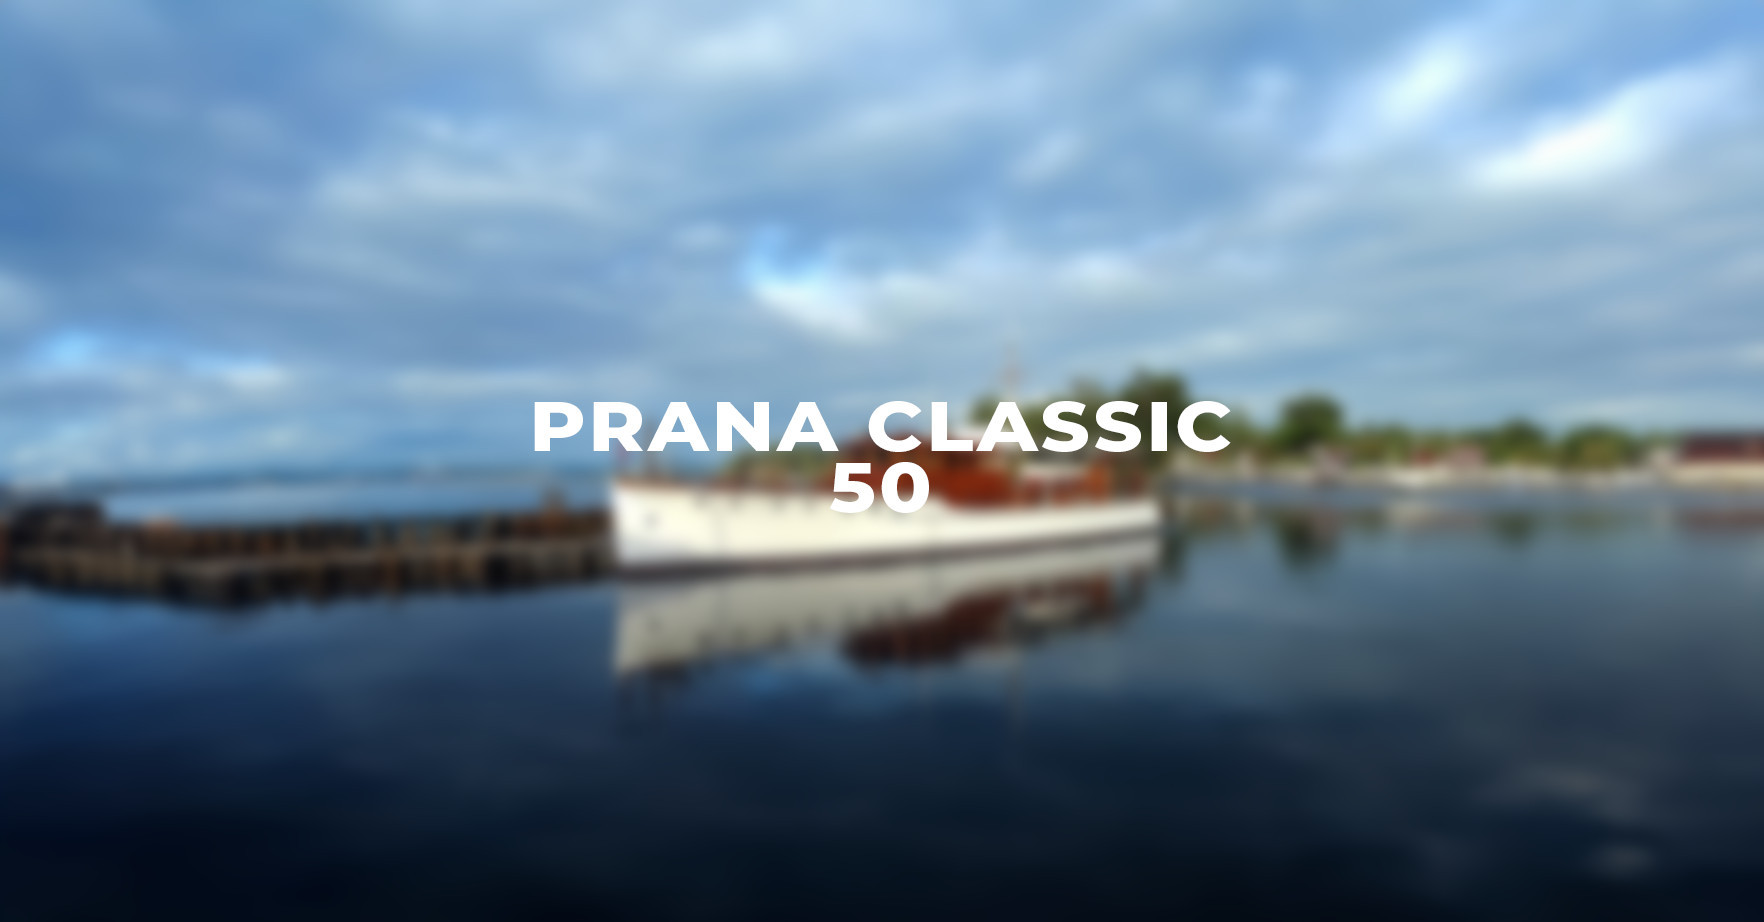 Prana Classic 50